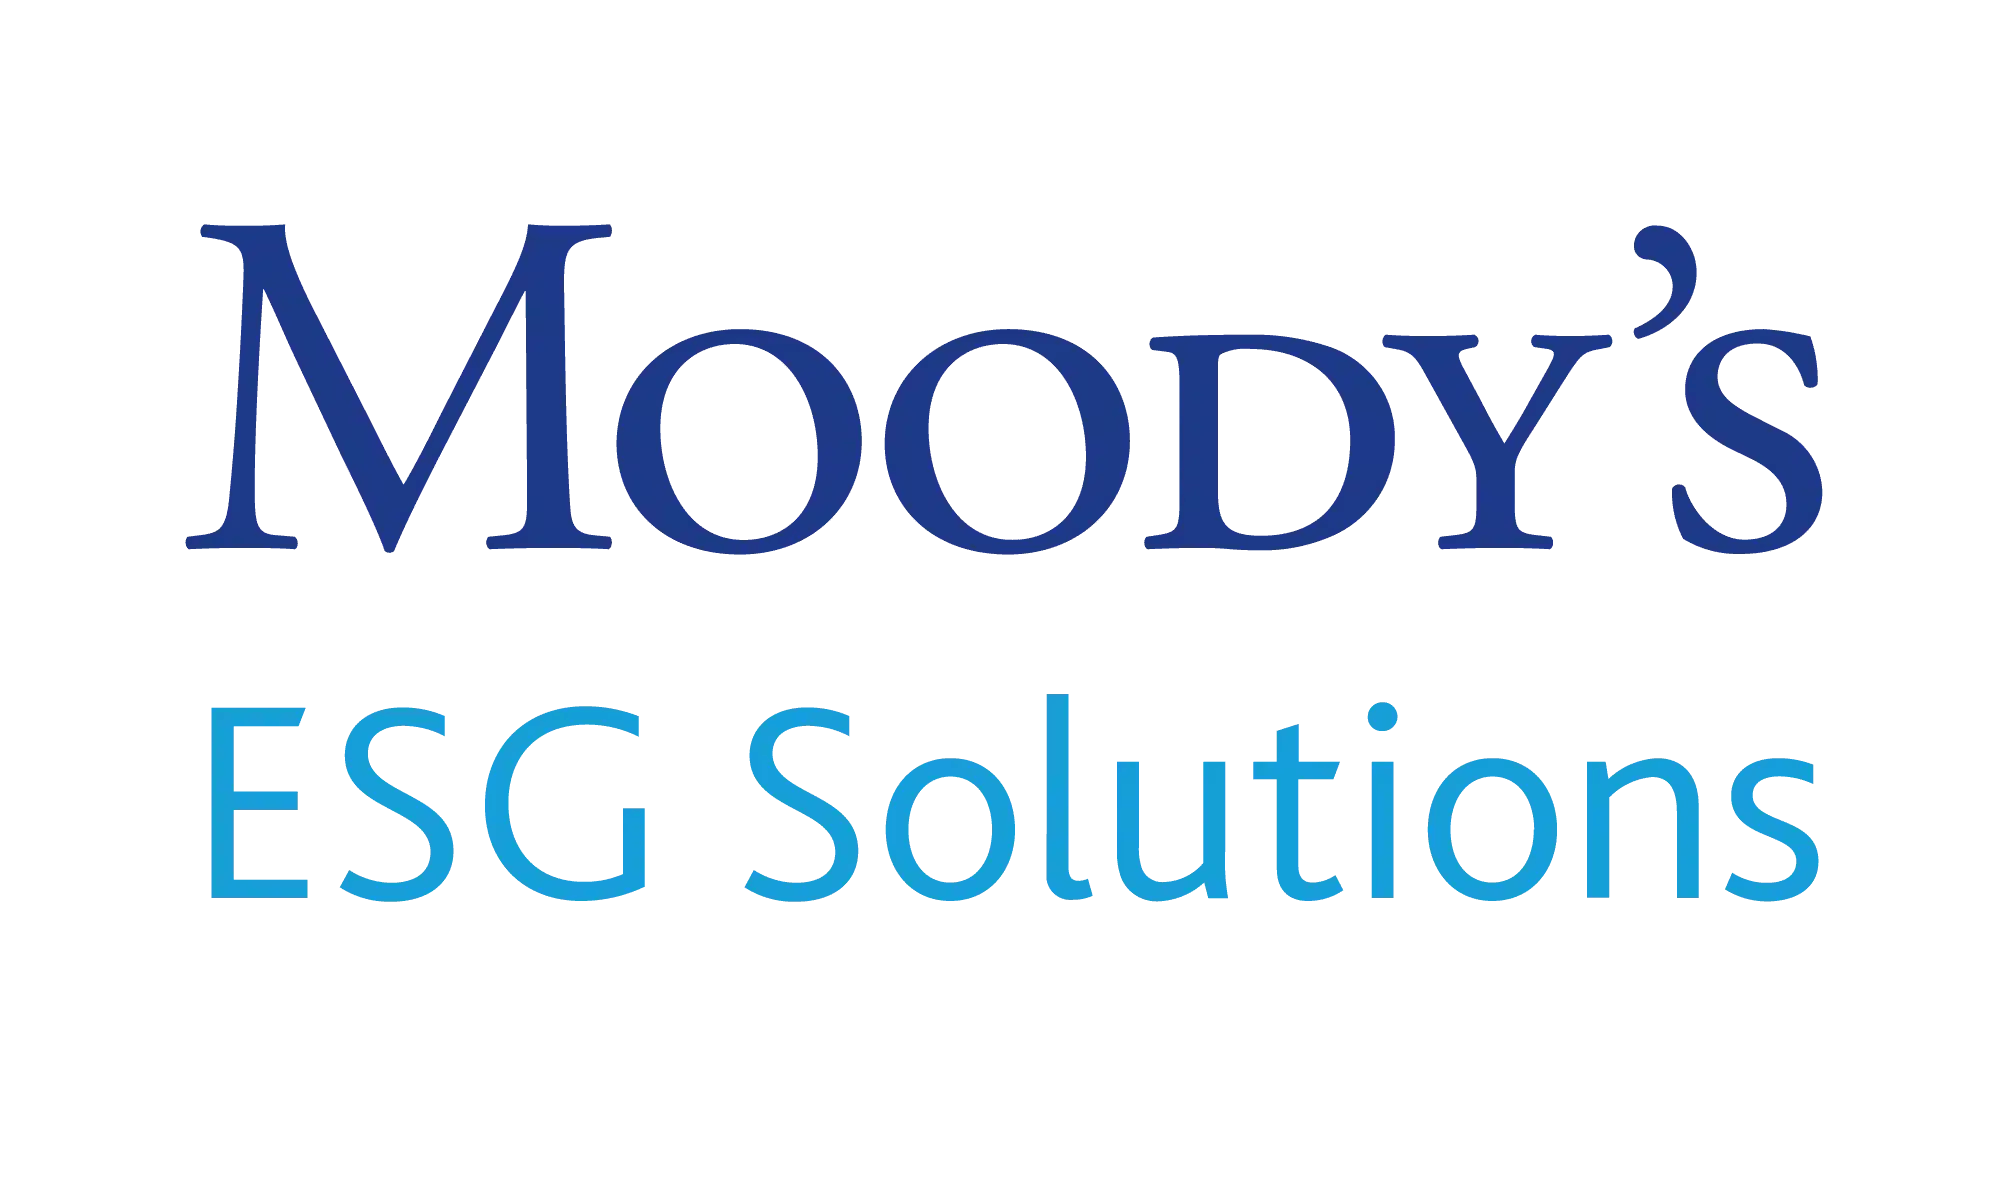 Moody’s ESG Solutions logo